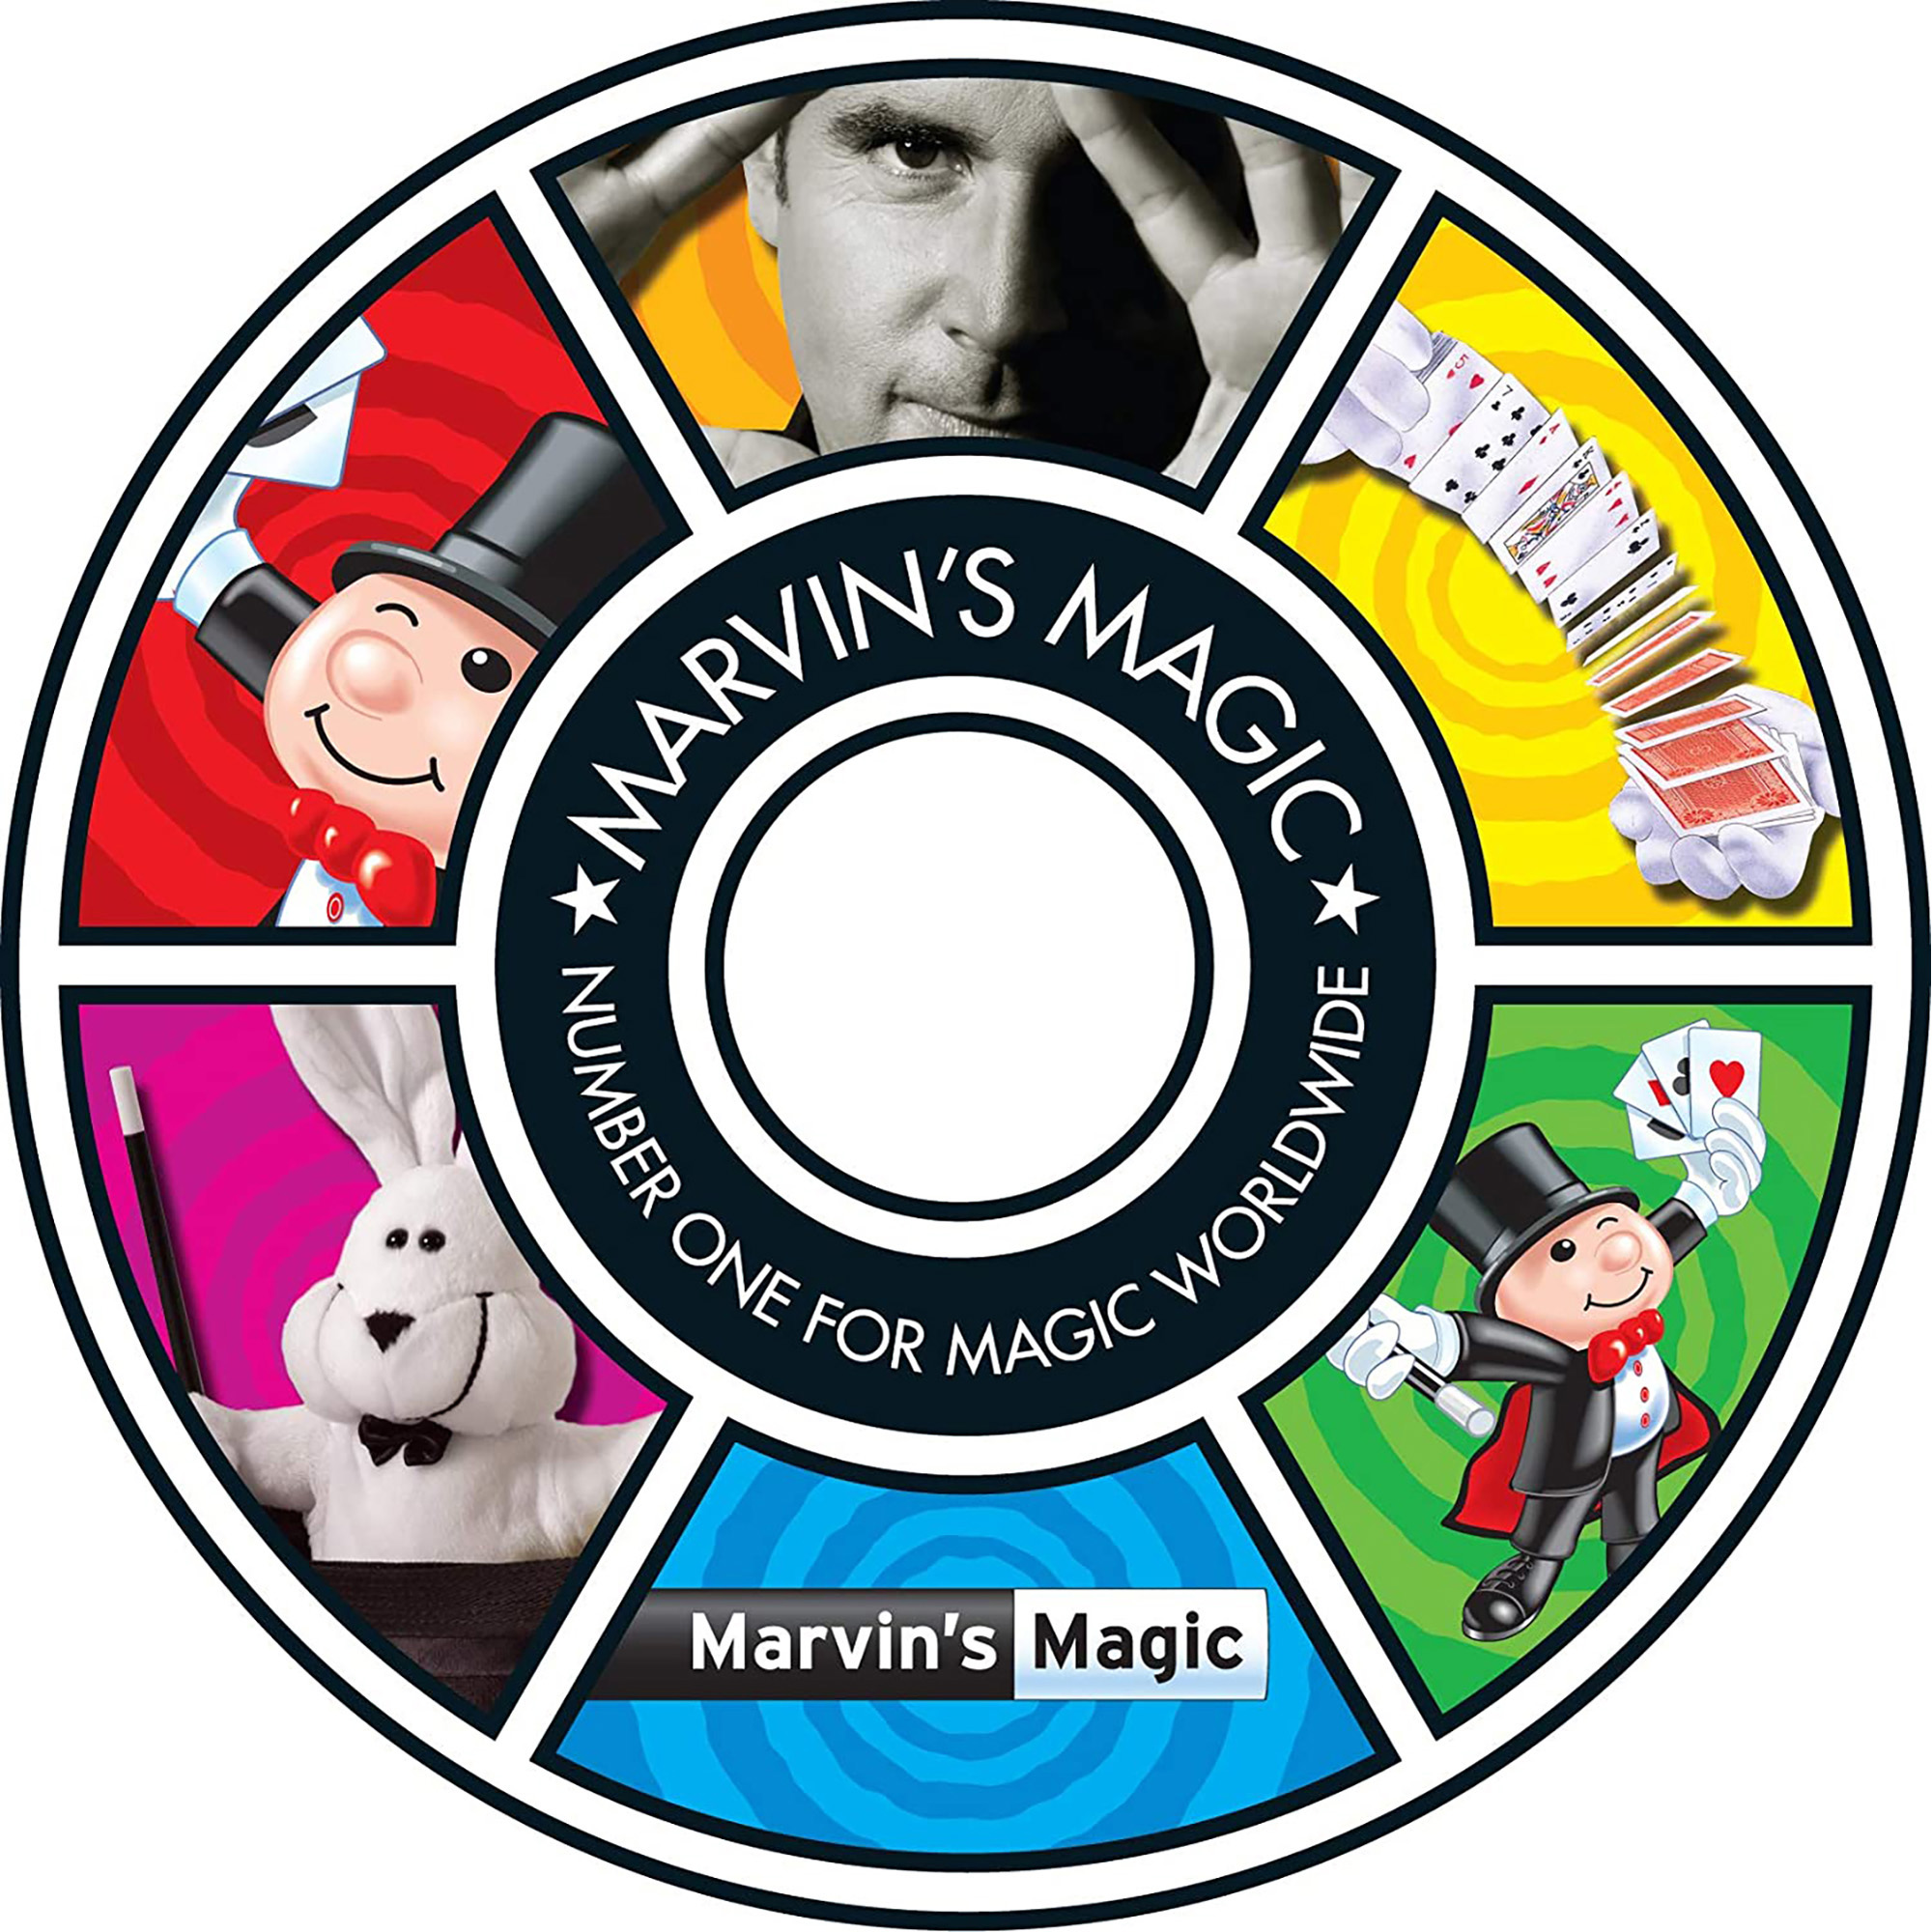 Marvin’s Magic Pocket Tricks 2, 30 semplici trucchi di magia portatili - Marvin's Magic